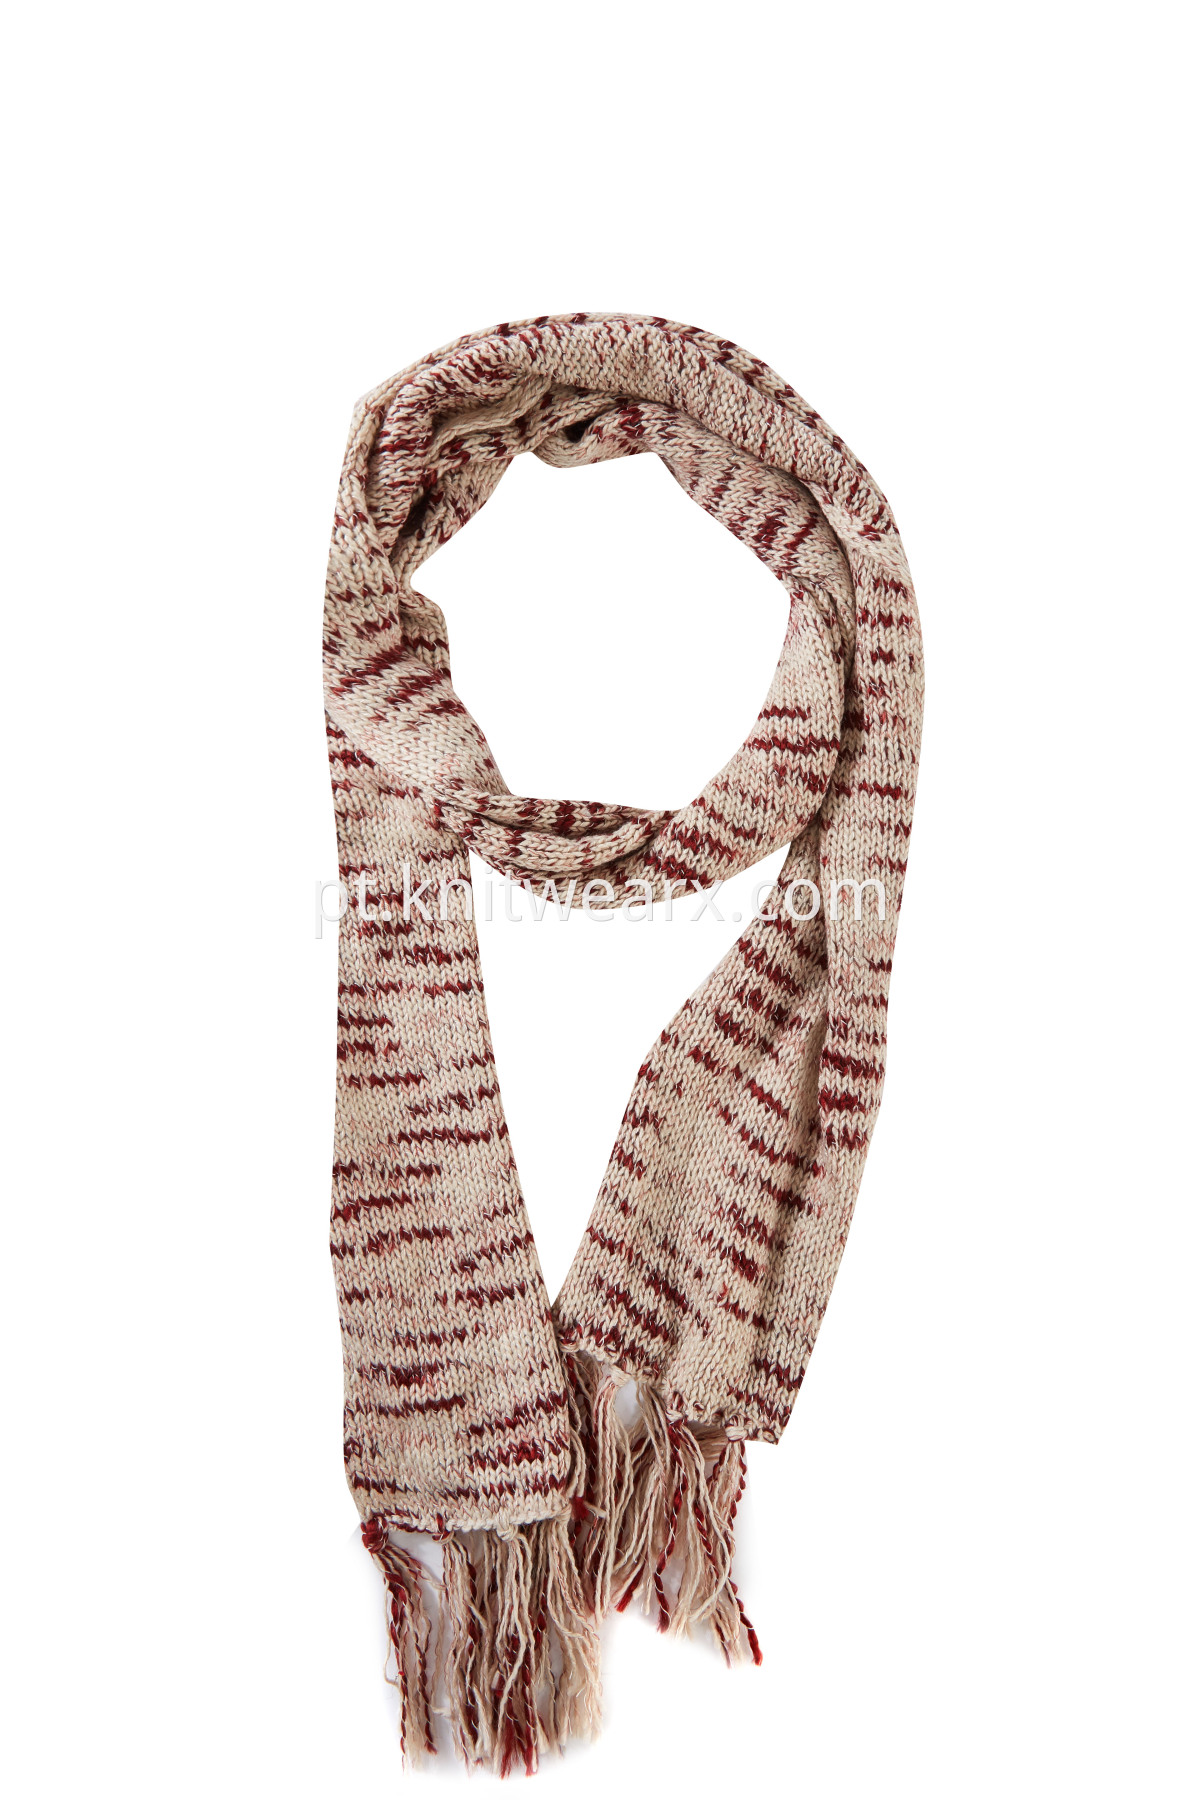 Women's Accessories Long Warm Fancy yarn Knit Shawl Tassel Scarf